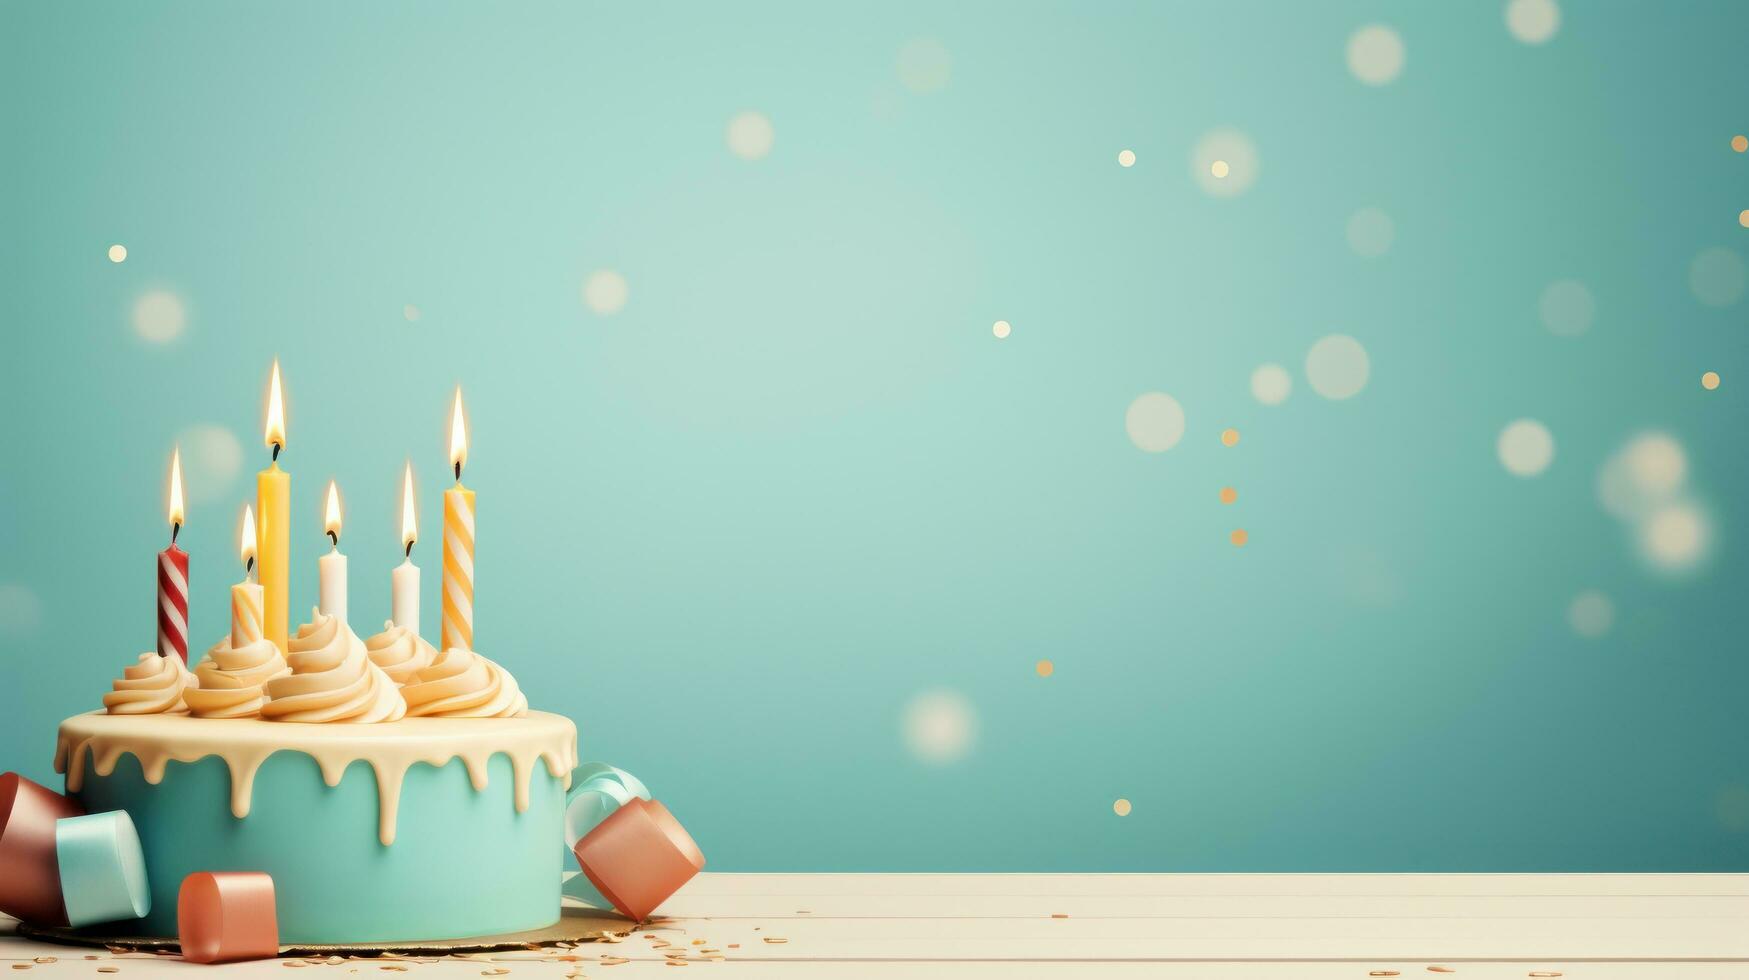 anniversaire gâteau avec bougies avec copie espace photo